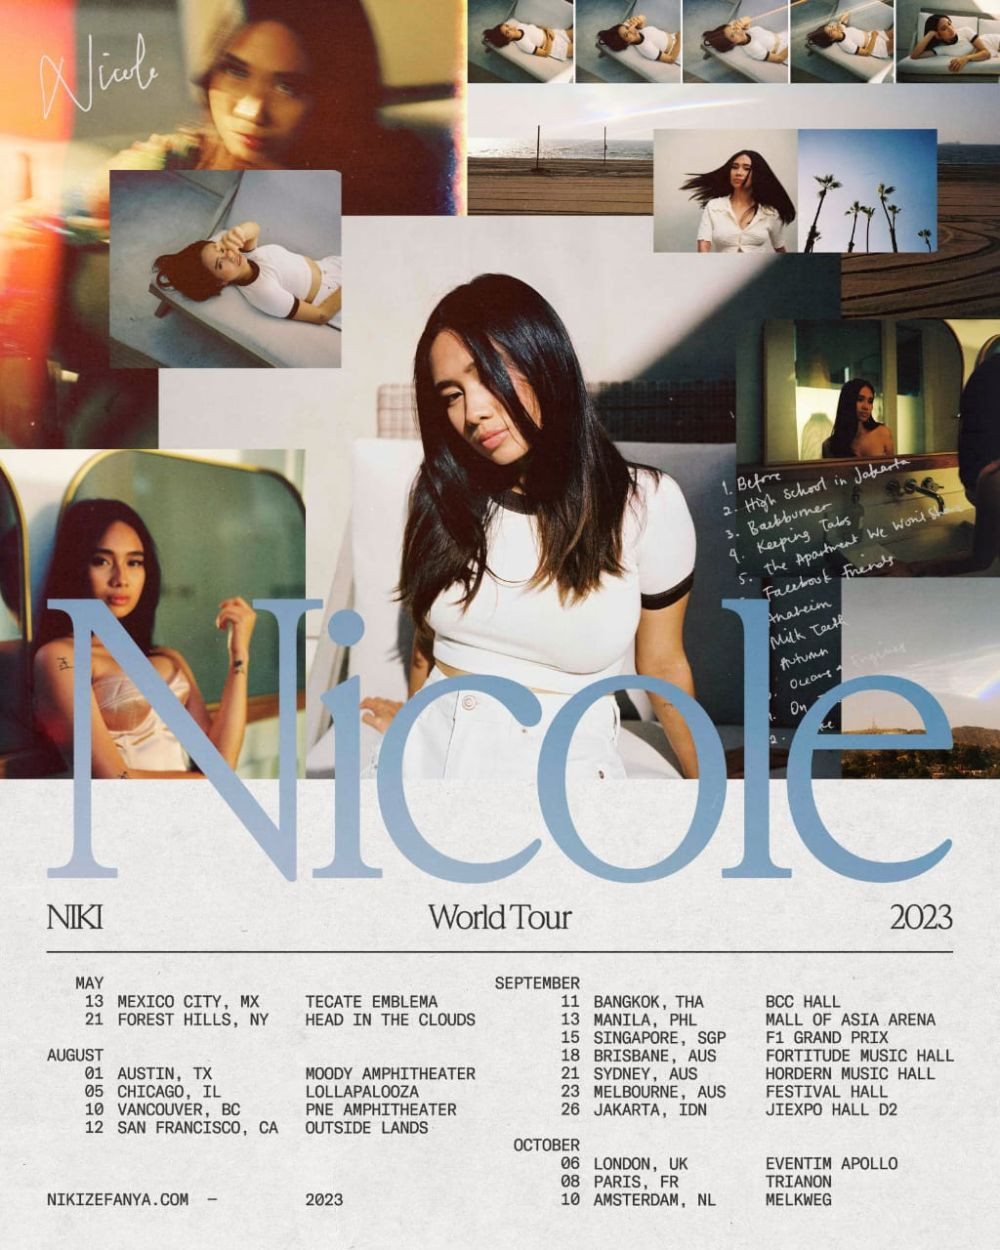 Jadwal dan Harga Tiket Konser NIKI Nicole World Tour 2023  Jakarta